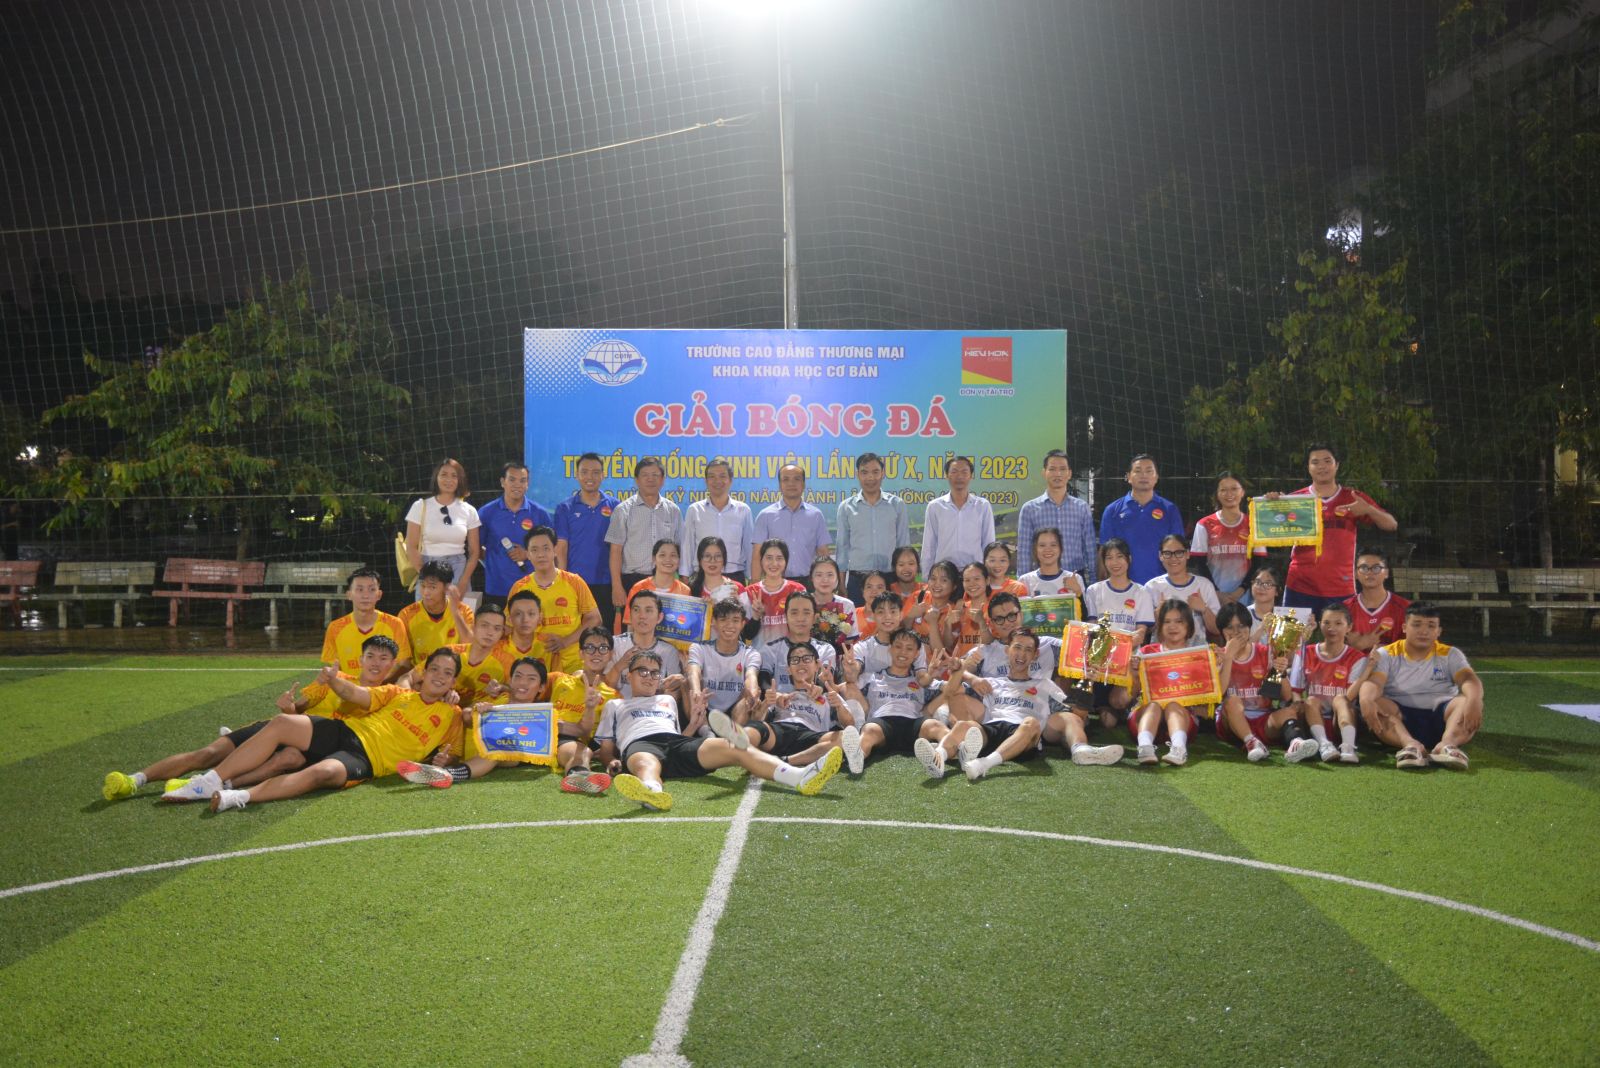 Hấp dẫn chung kết giải bóng đá sinh viên chào mừng 50 năm thành lập Trường (1973-2023)